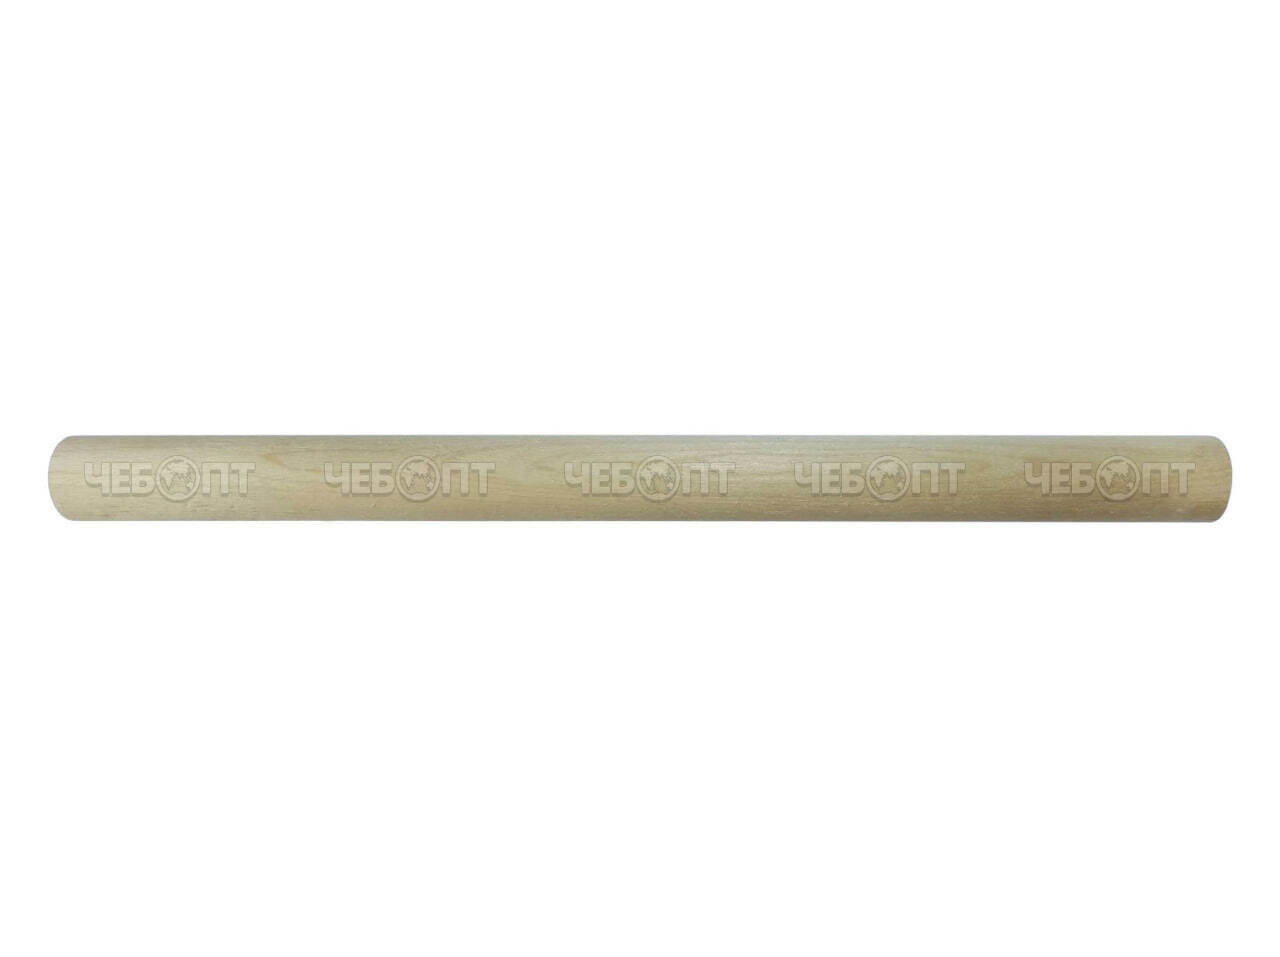 Скалка для теста деревянная круглая 500*30 мм из березы арт. 2403 [100]. ЧЕБОПТ.